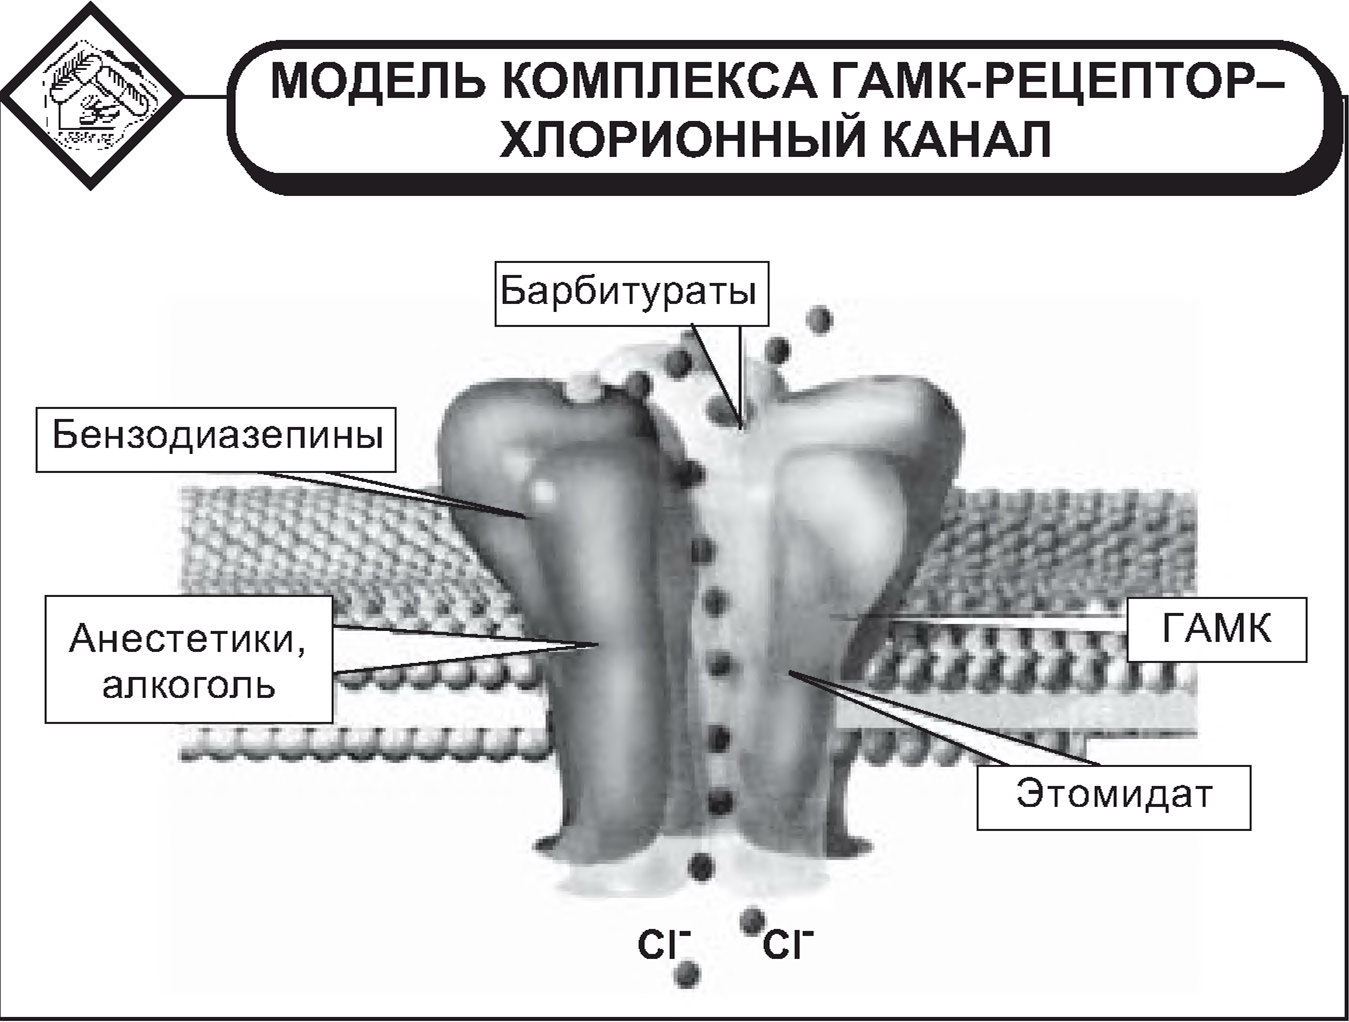 Модель комплекса гамк-рецептор–хлорионный канал